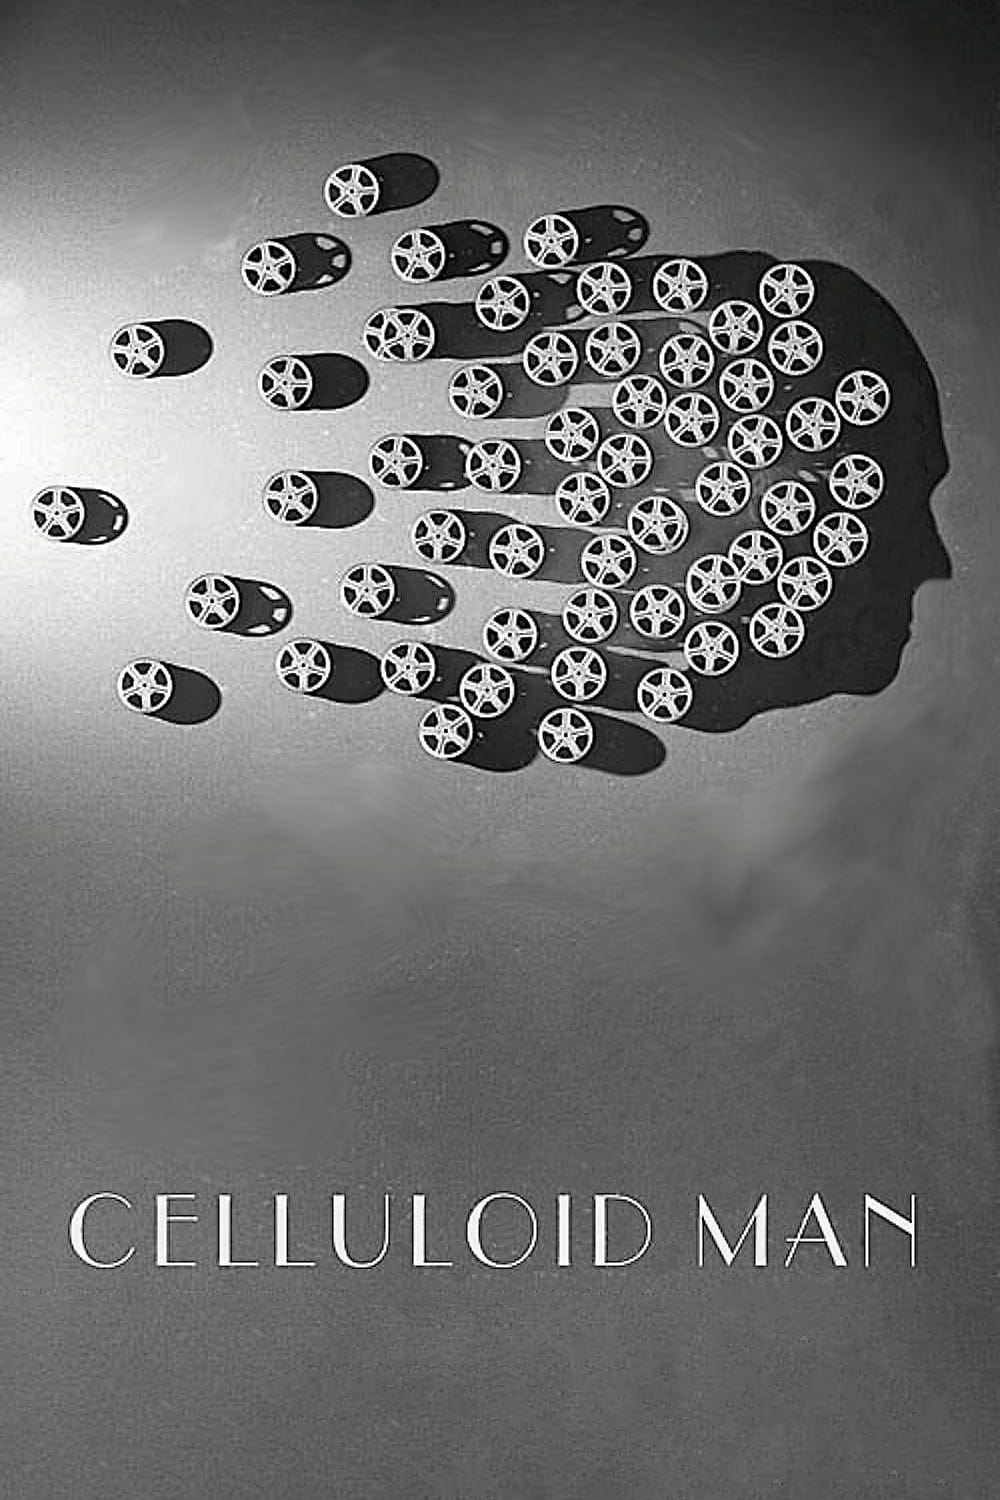 Celluloid Man (2012) | Poster